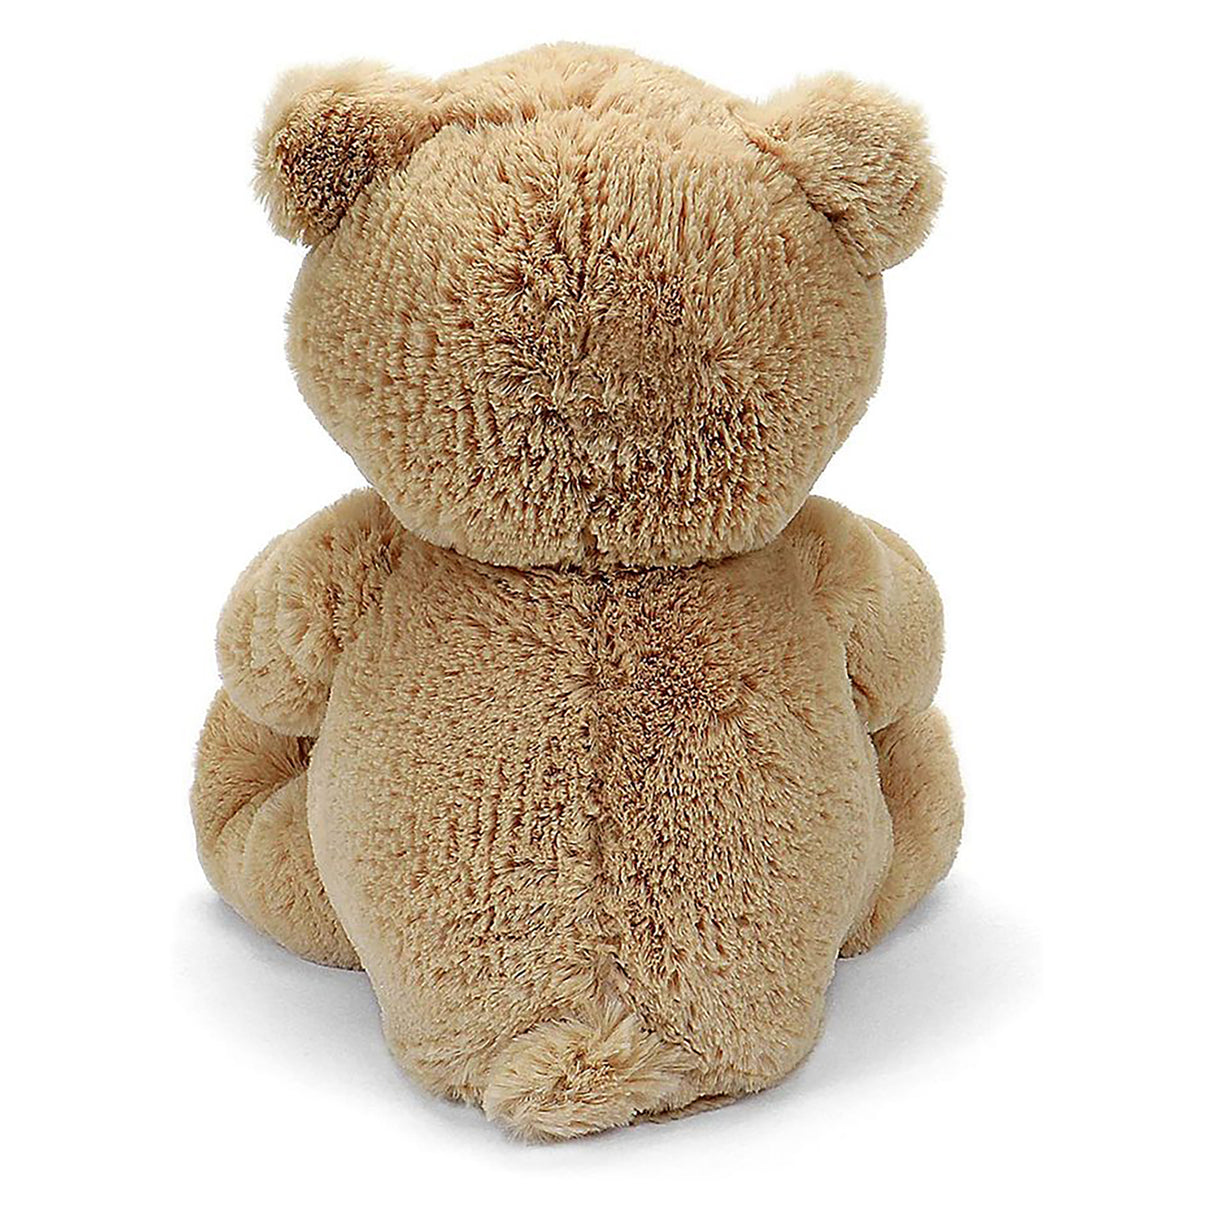 Gund Peek-a-Boo Bear Interactive Plush (26 cms) – Toys R Us Australia